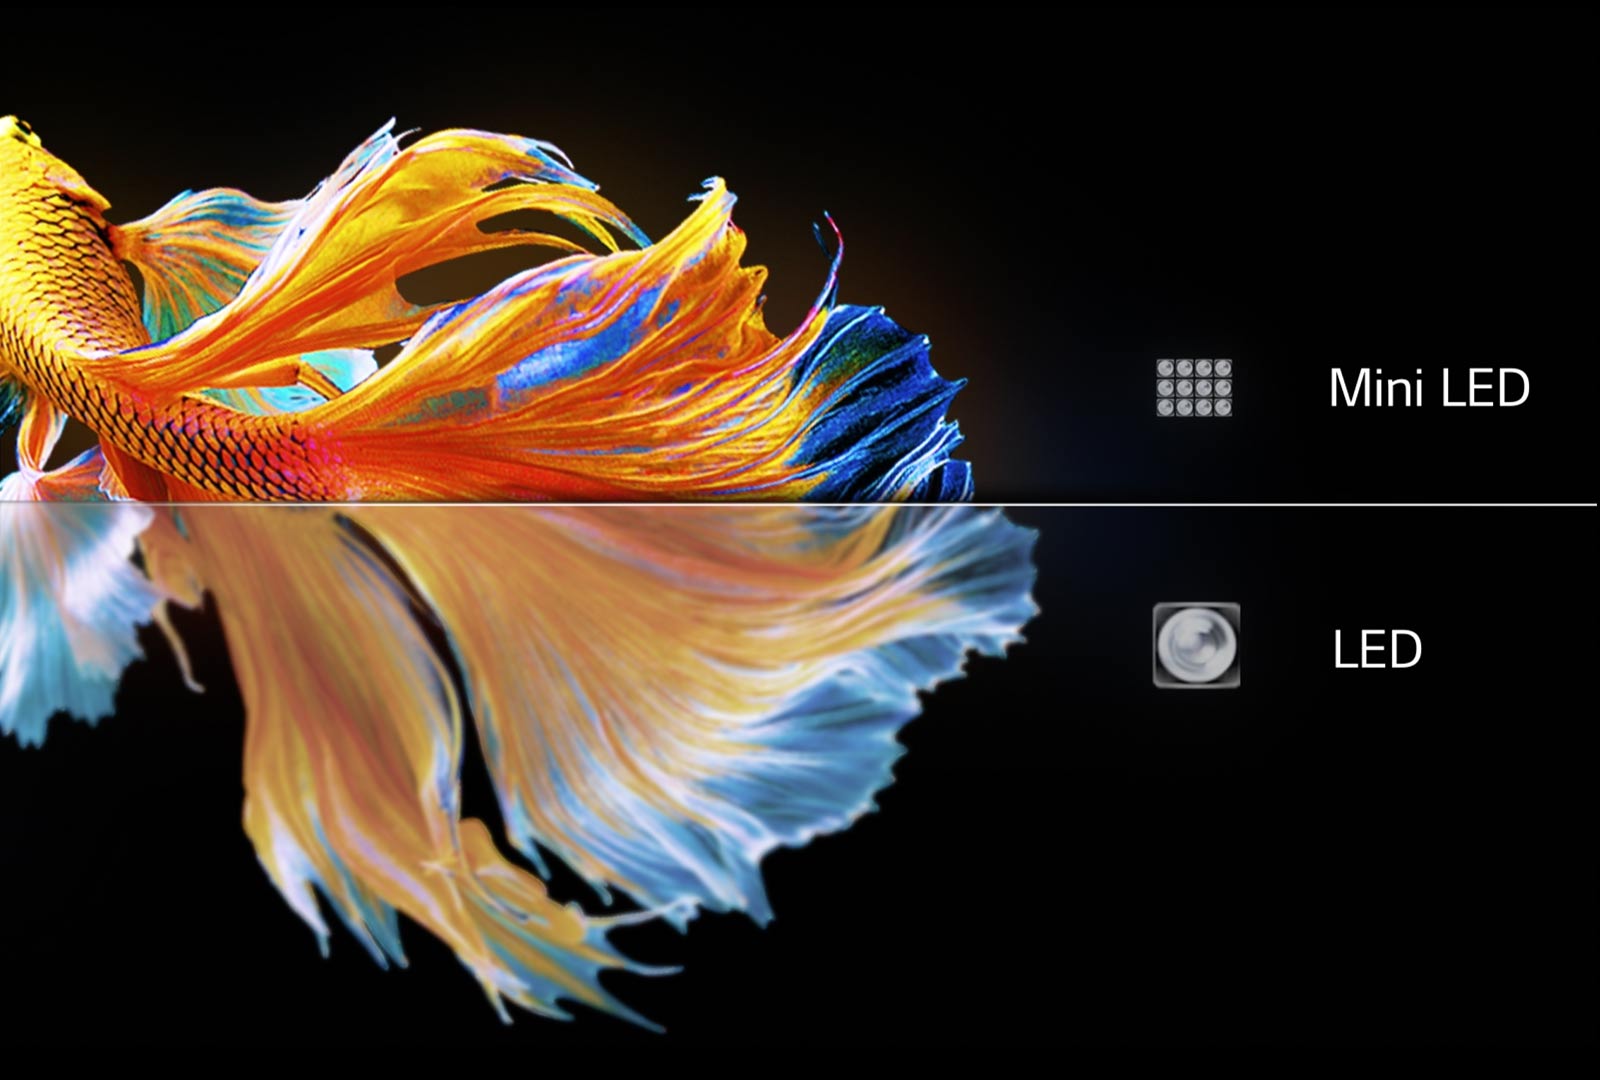 Obraz rybiego ogona. Dolna połowa na ekranie LED jest niewyraźna i zaćmiona. Górna połowa na ekranie MiniLED jest ostrzejsza i bardziej kolorowa (odtwórz wideo).